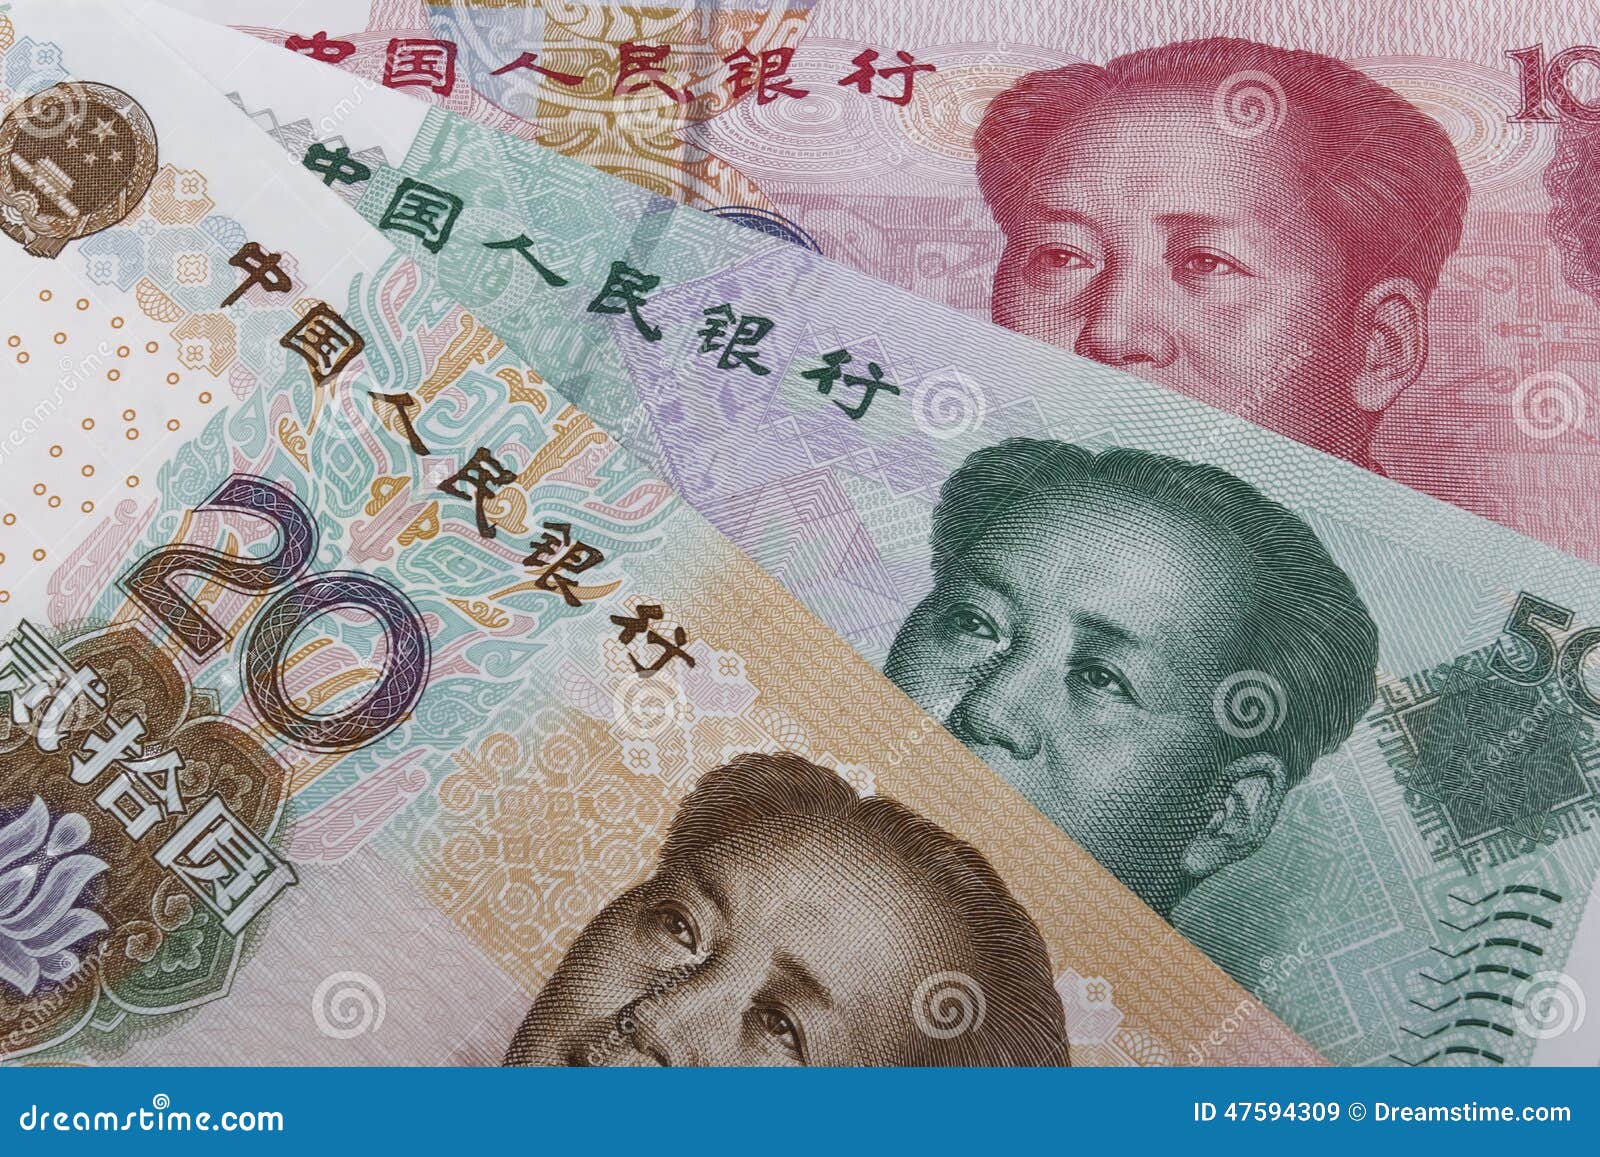 Китайские деньги переводить в рубли. Китайские деньги. Валюта Китая. Китайский юань. Банкноты Китая.